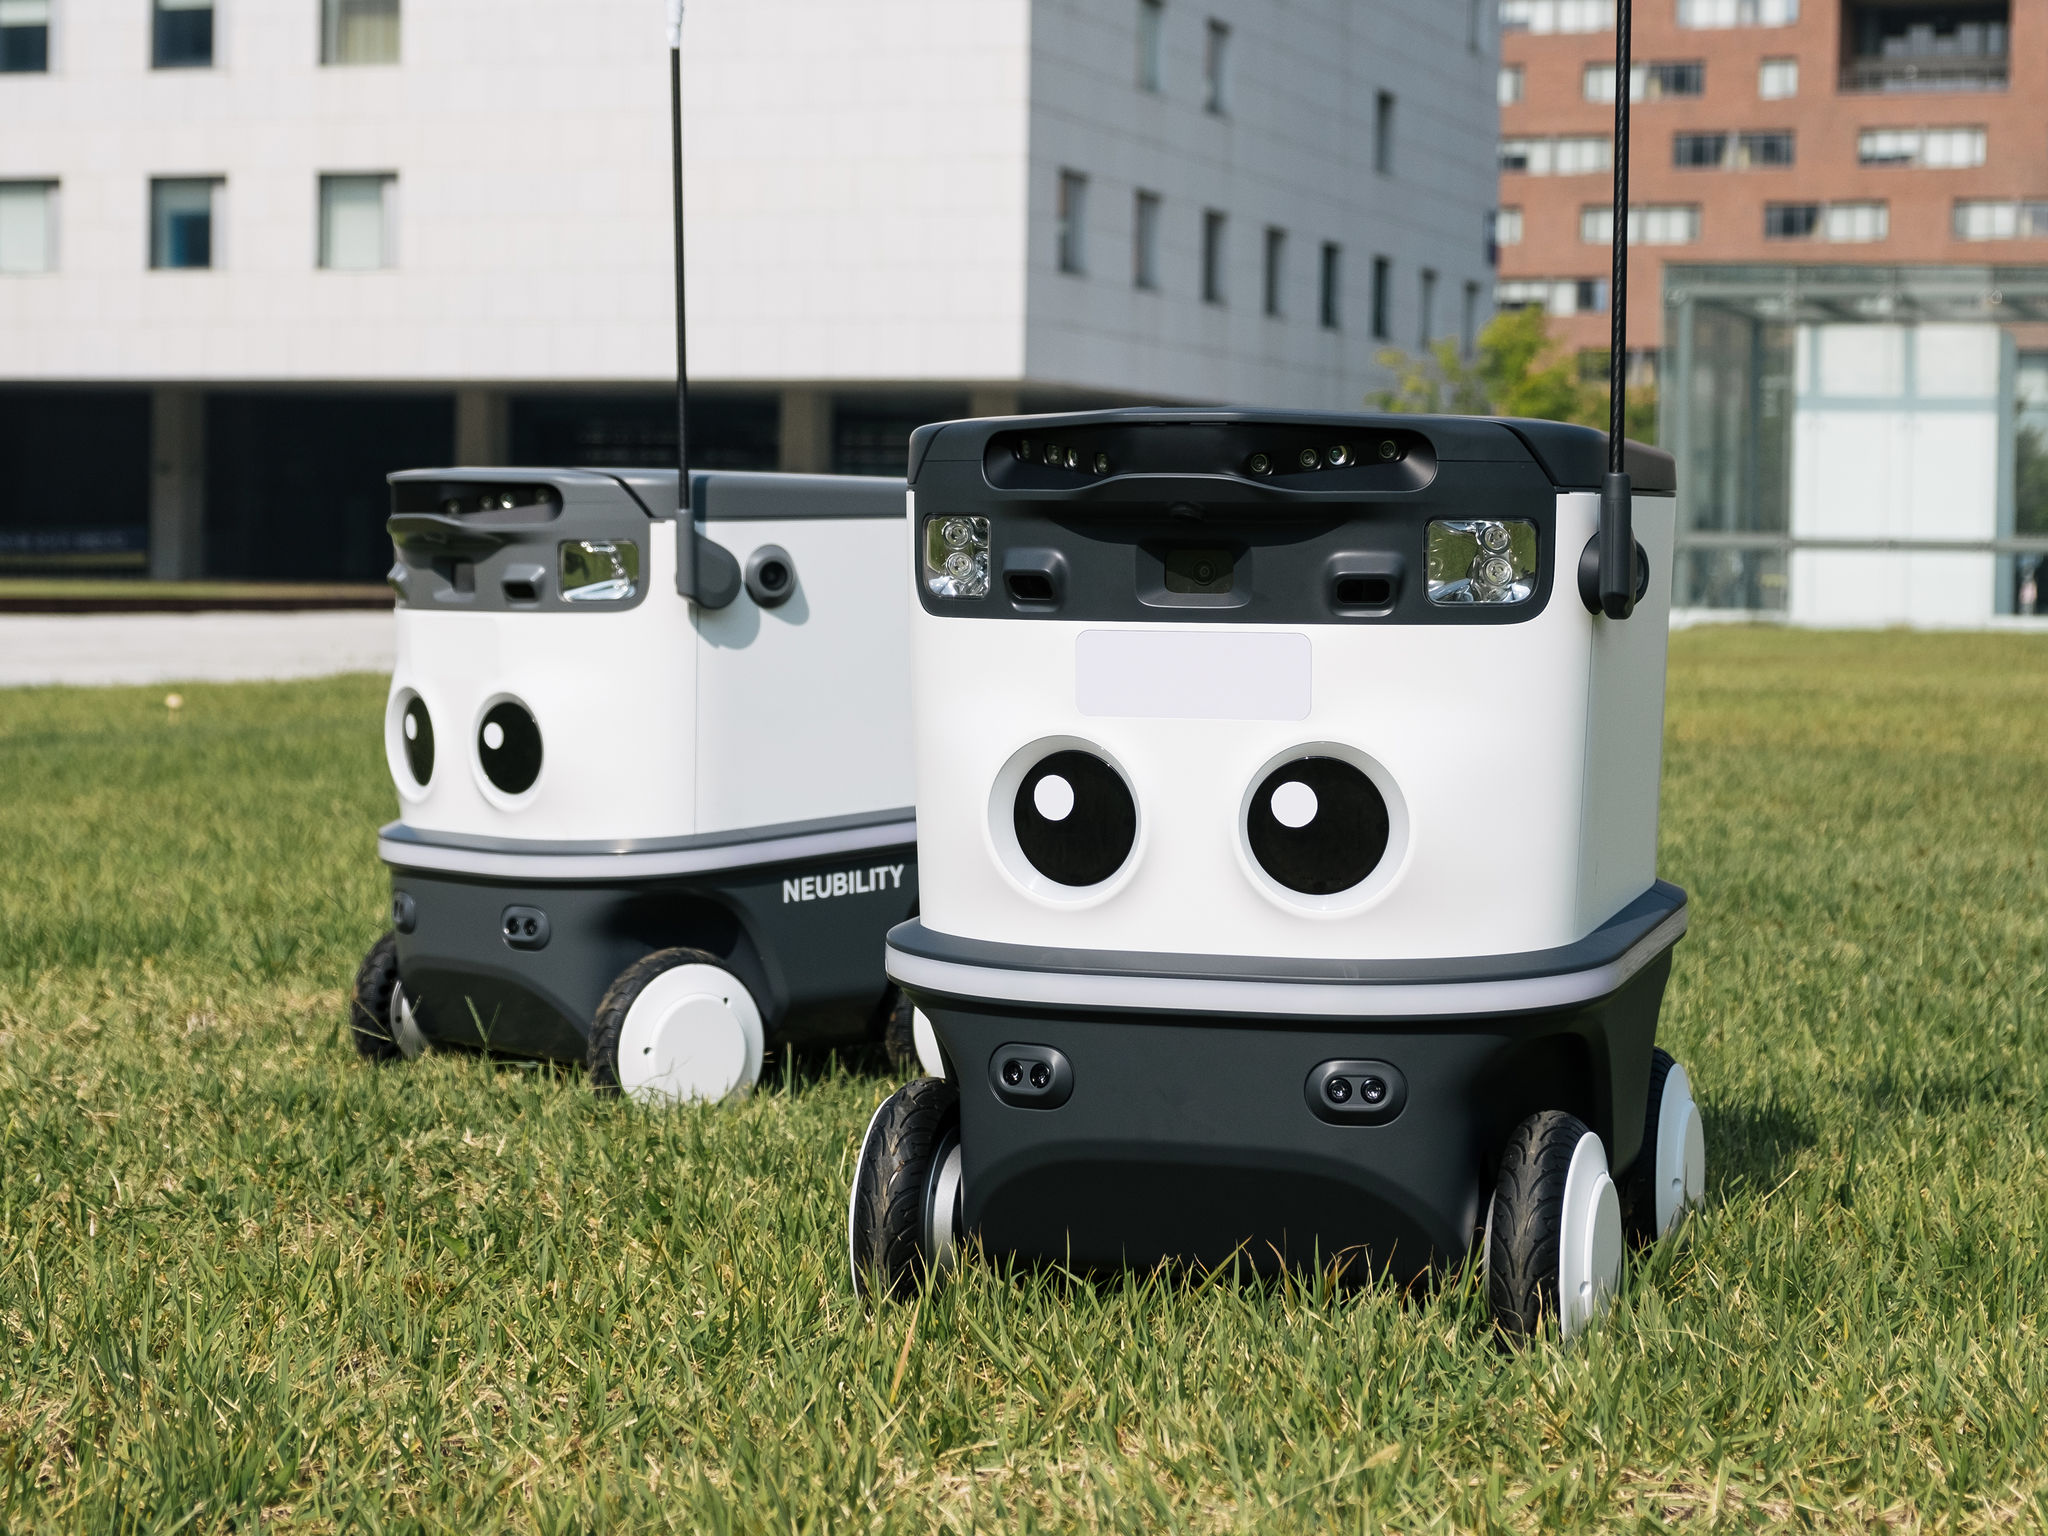 Neubility et Samsung vont lancer la première livraison robotisée au monde sur les terrains de golf